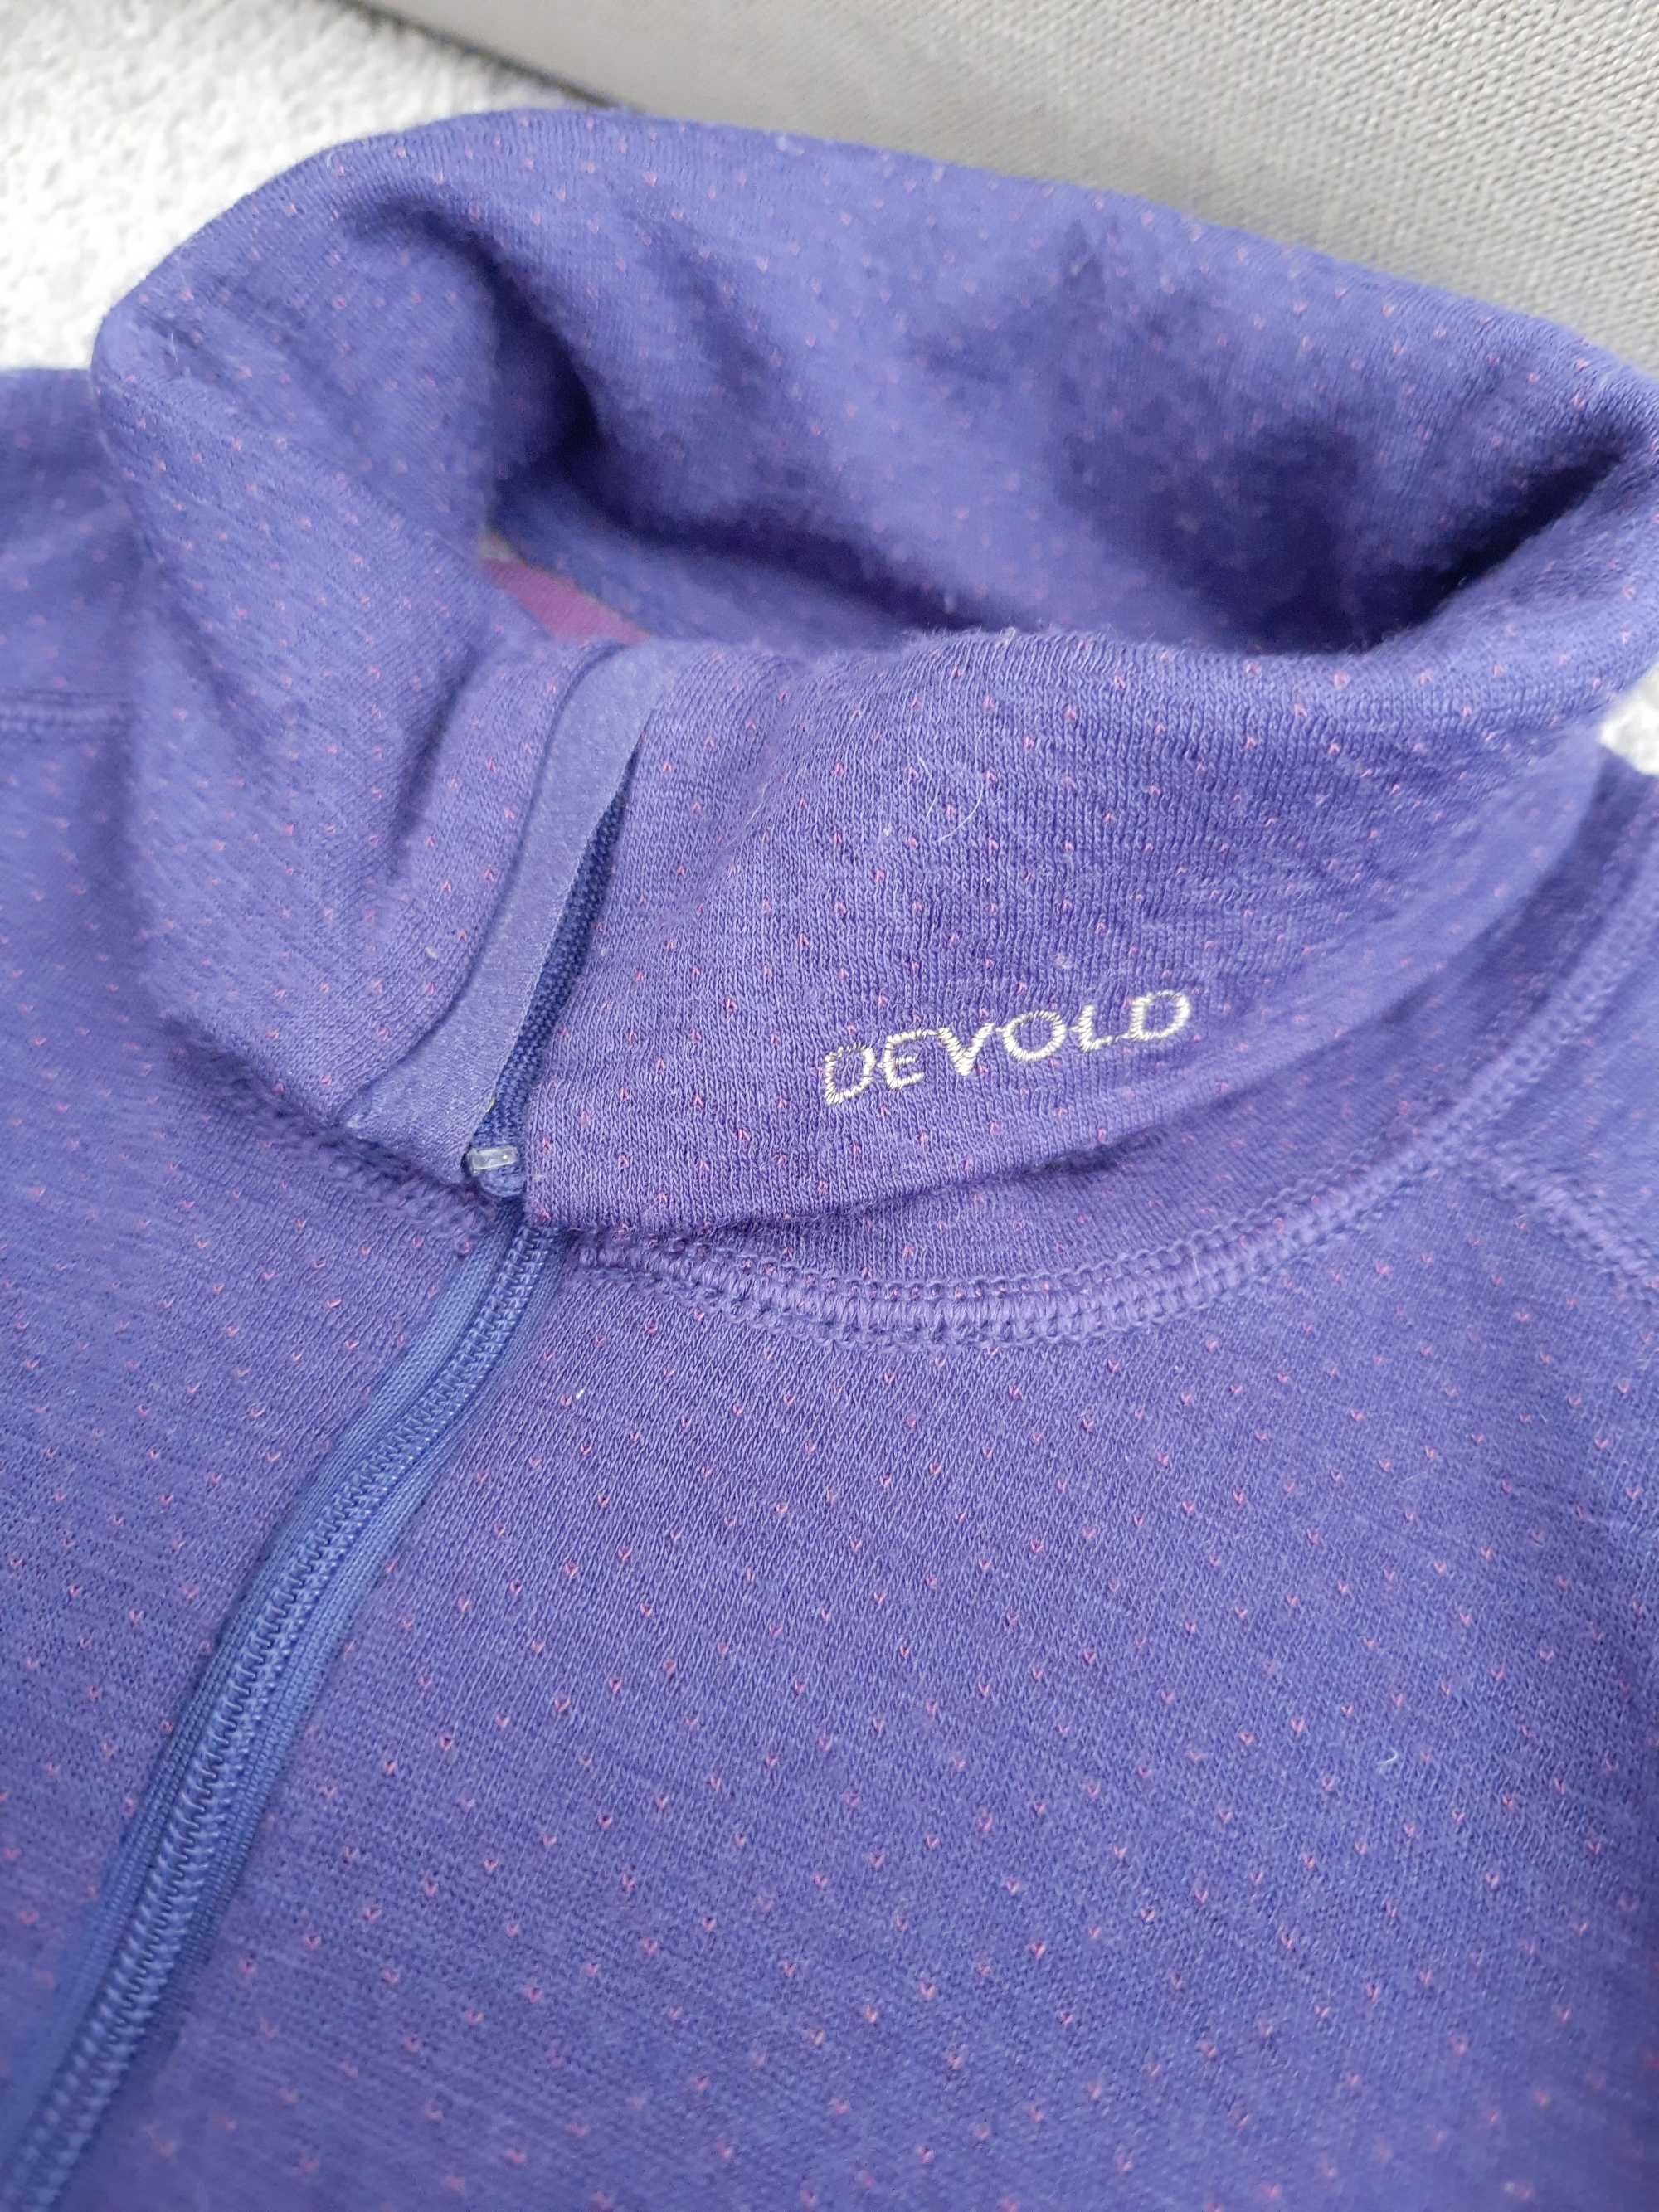 Bluzka bluza golf Devold wełniana merino wool rozm XL